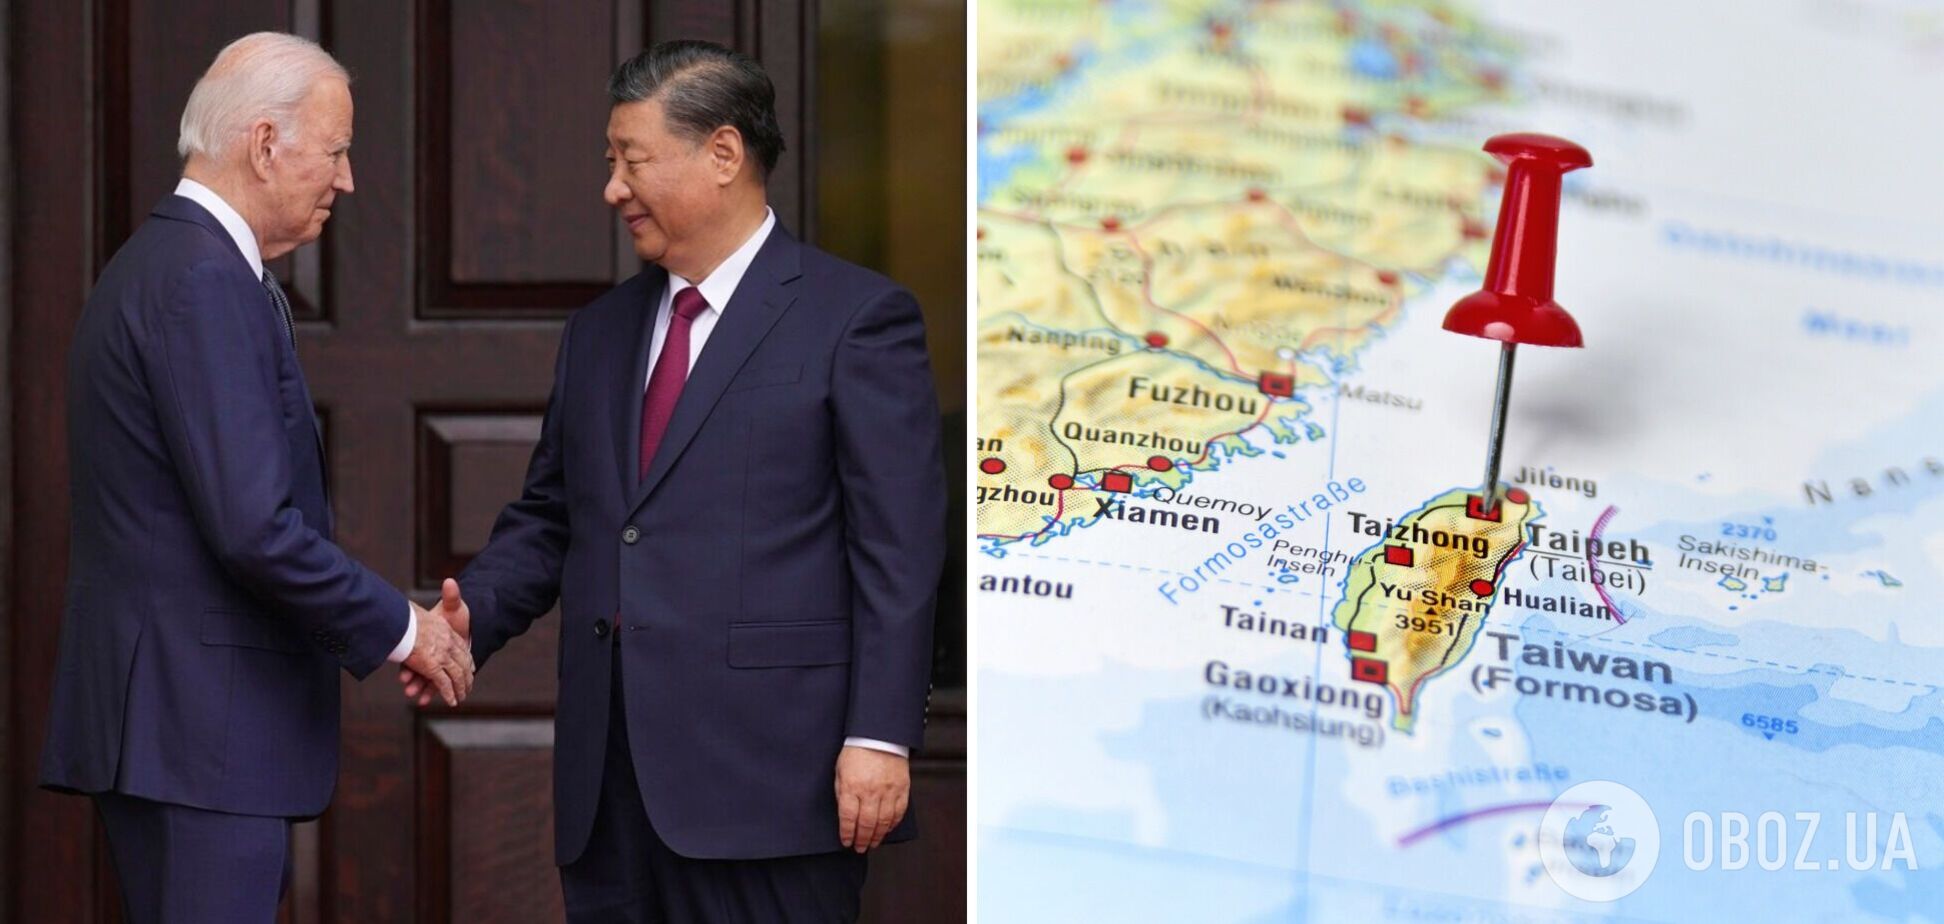 Си Цзиньпин предупредил Байдена об аннексии Тайваня, но не назвал сроки – NBC